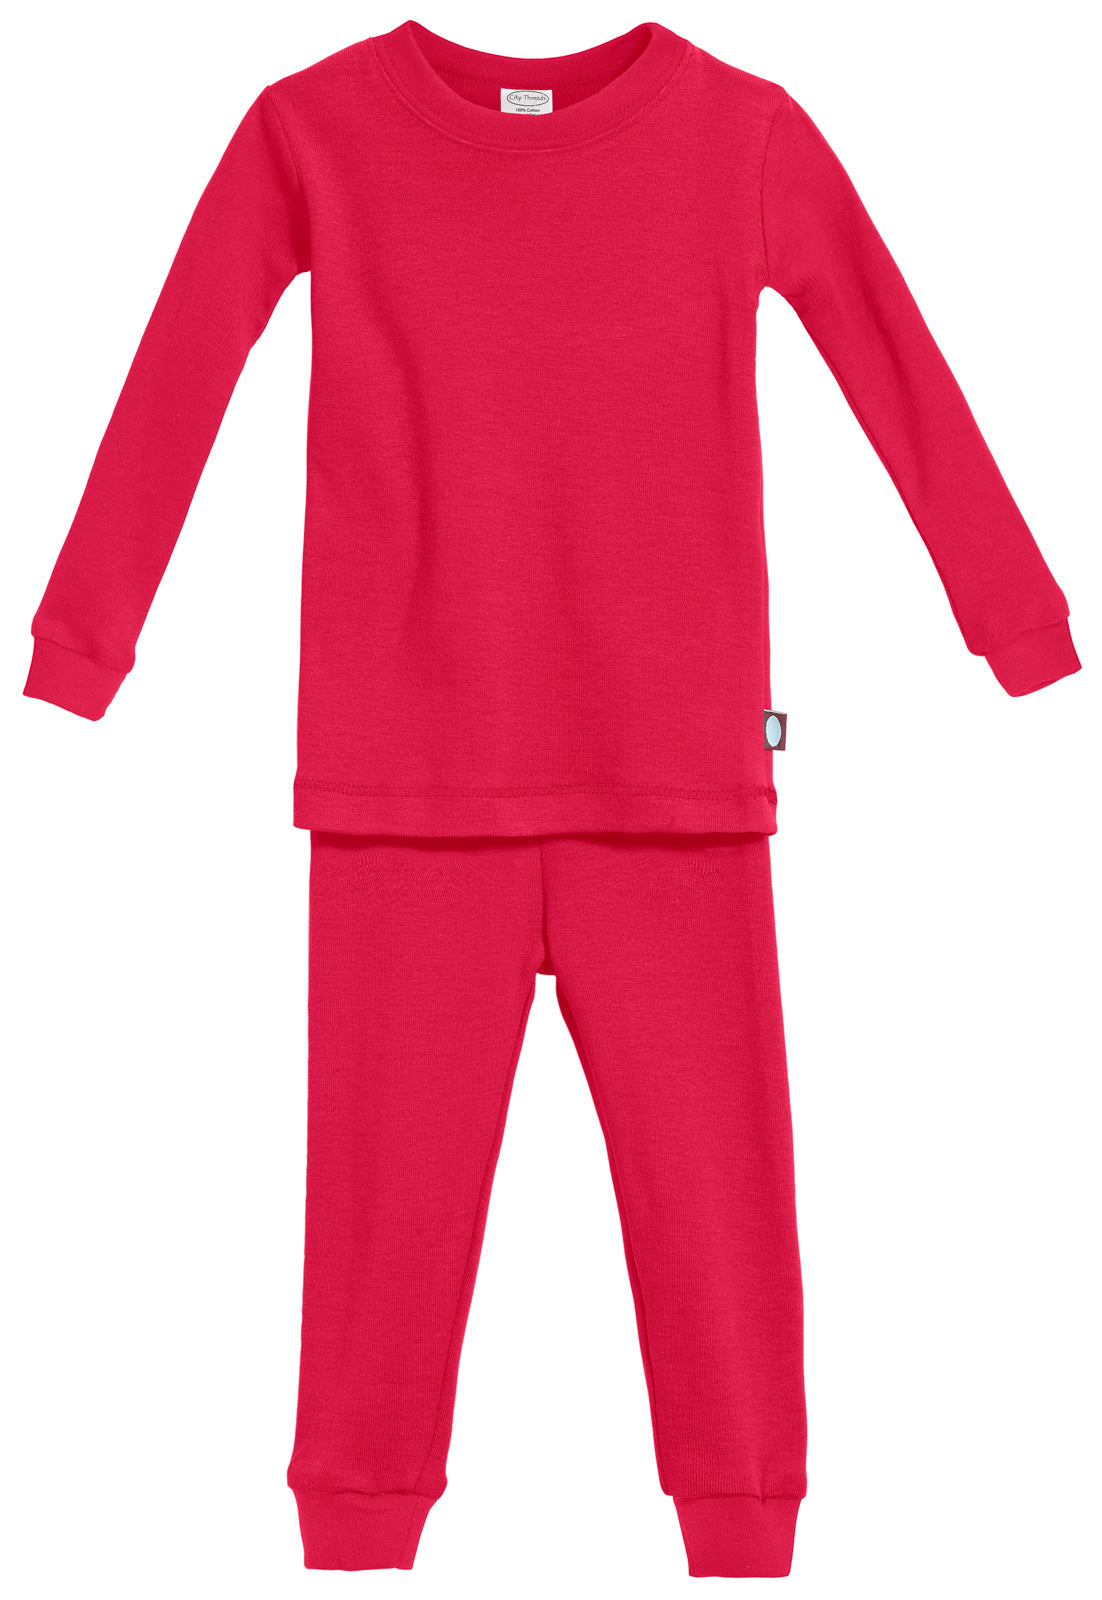 Organic cotton pyjamas set - Baby